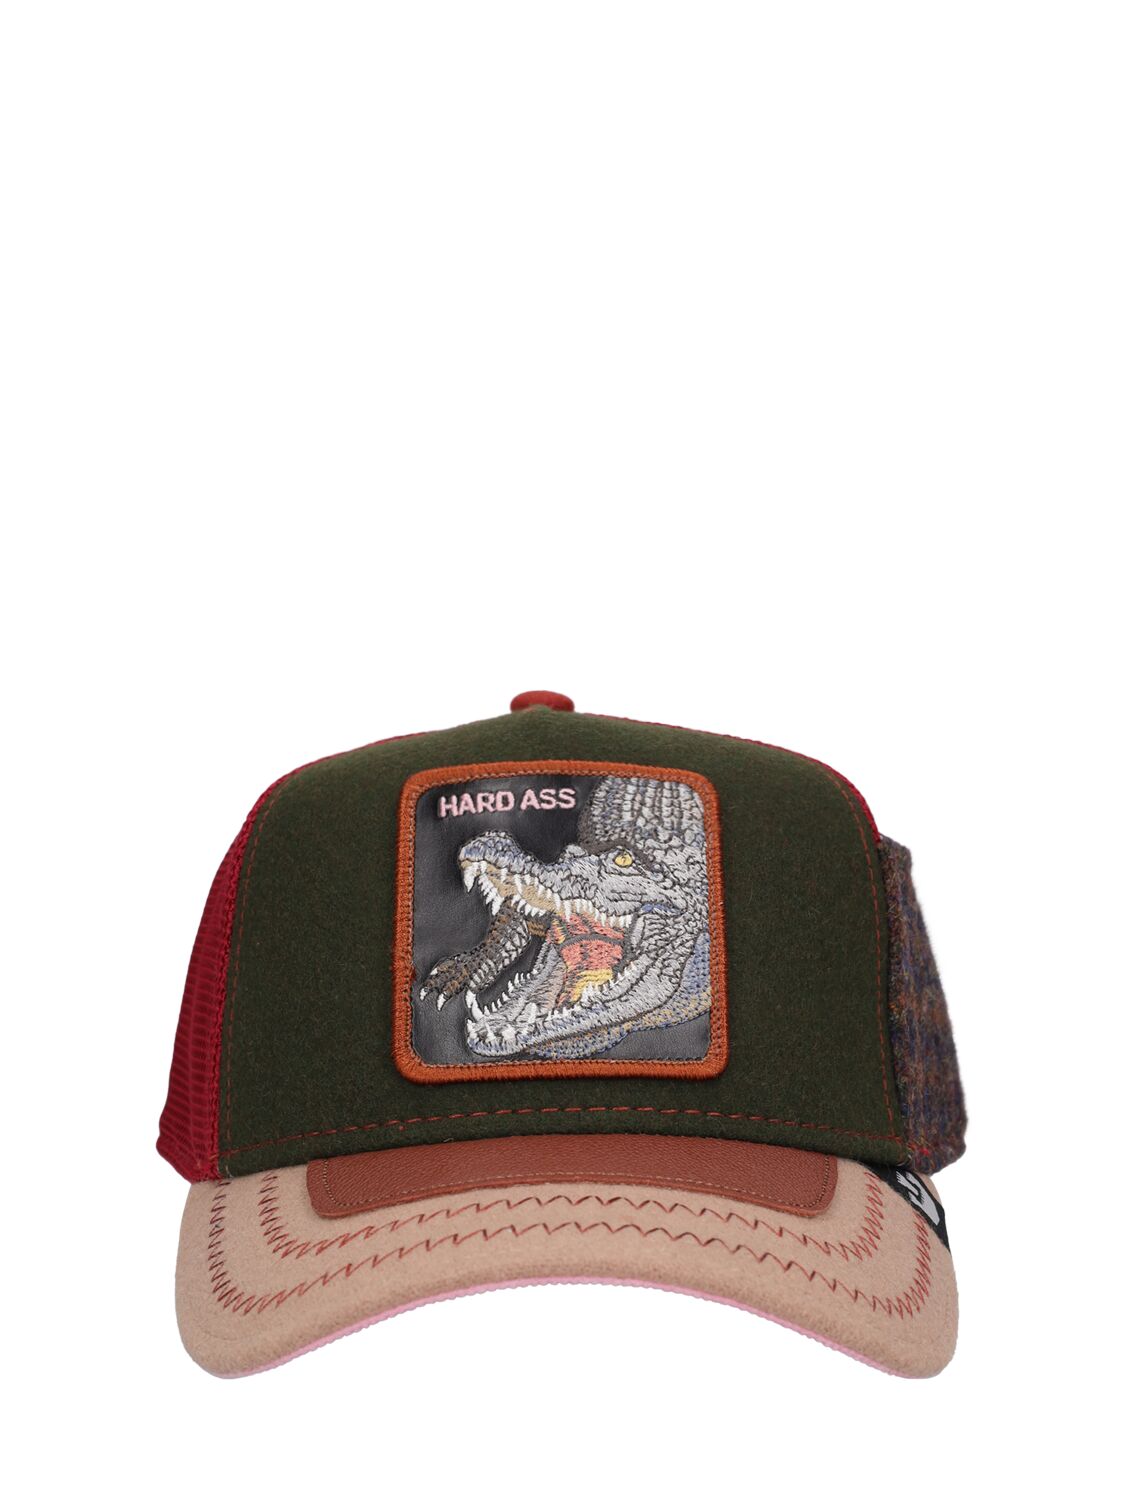 Image of Trunchbull Trucker Hat